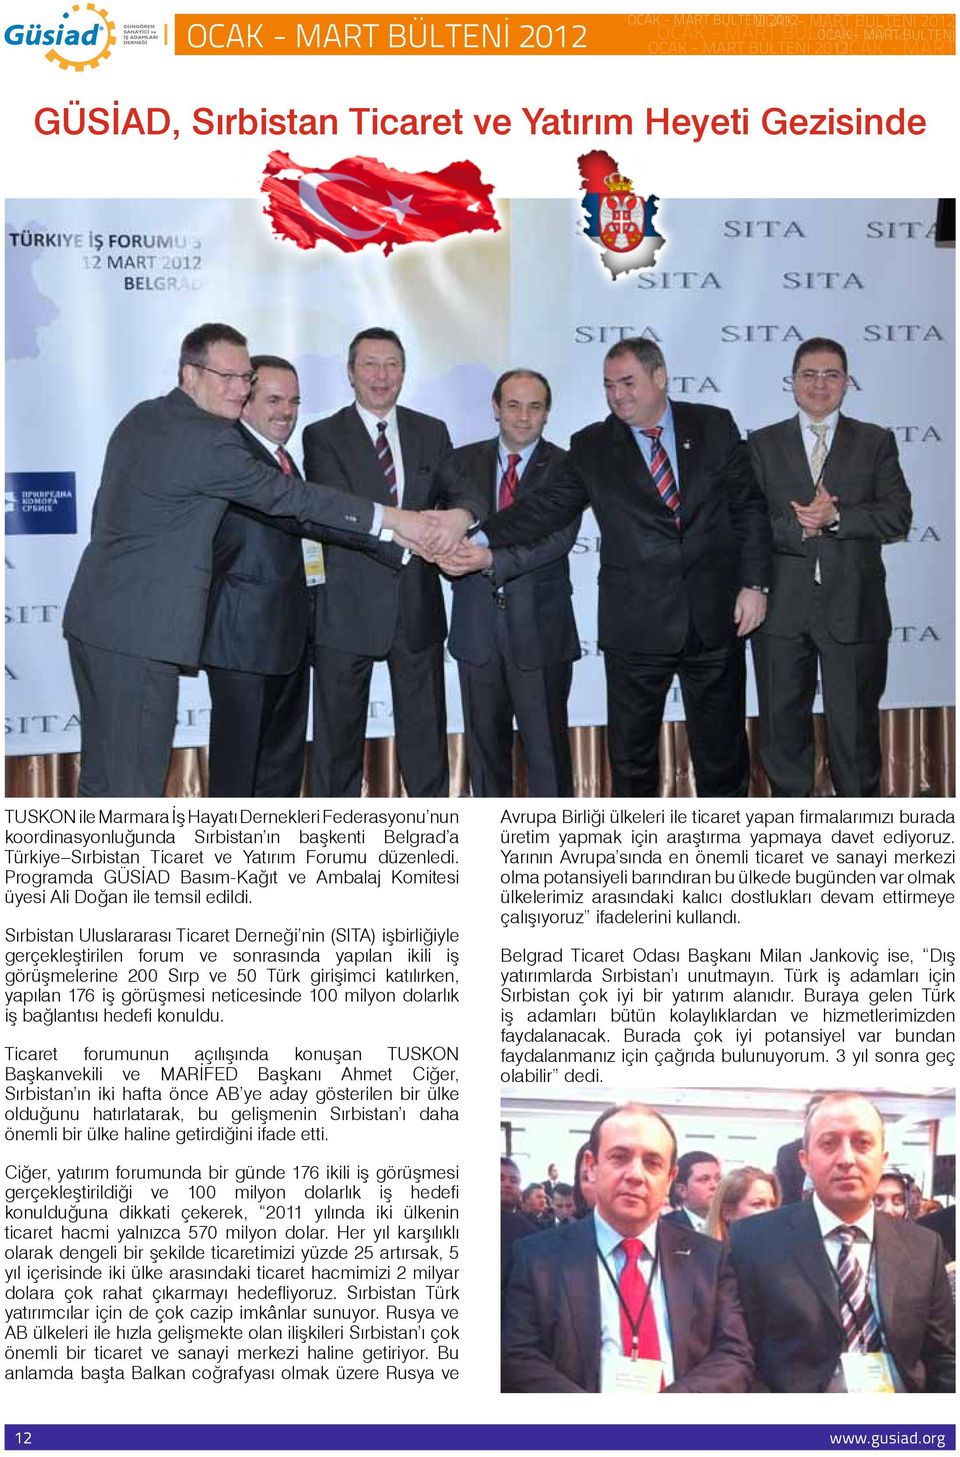 Sırbistan Uluslararası Ticaret Derneği nin (SITA) işbirliğiyle gerçekleştirilen forum ve sonrasında yapılan ikili iş görüşmelerine 200 Sırp ve 50 Türk girişimci katılırken, yapılan 176 iş görüşmesi